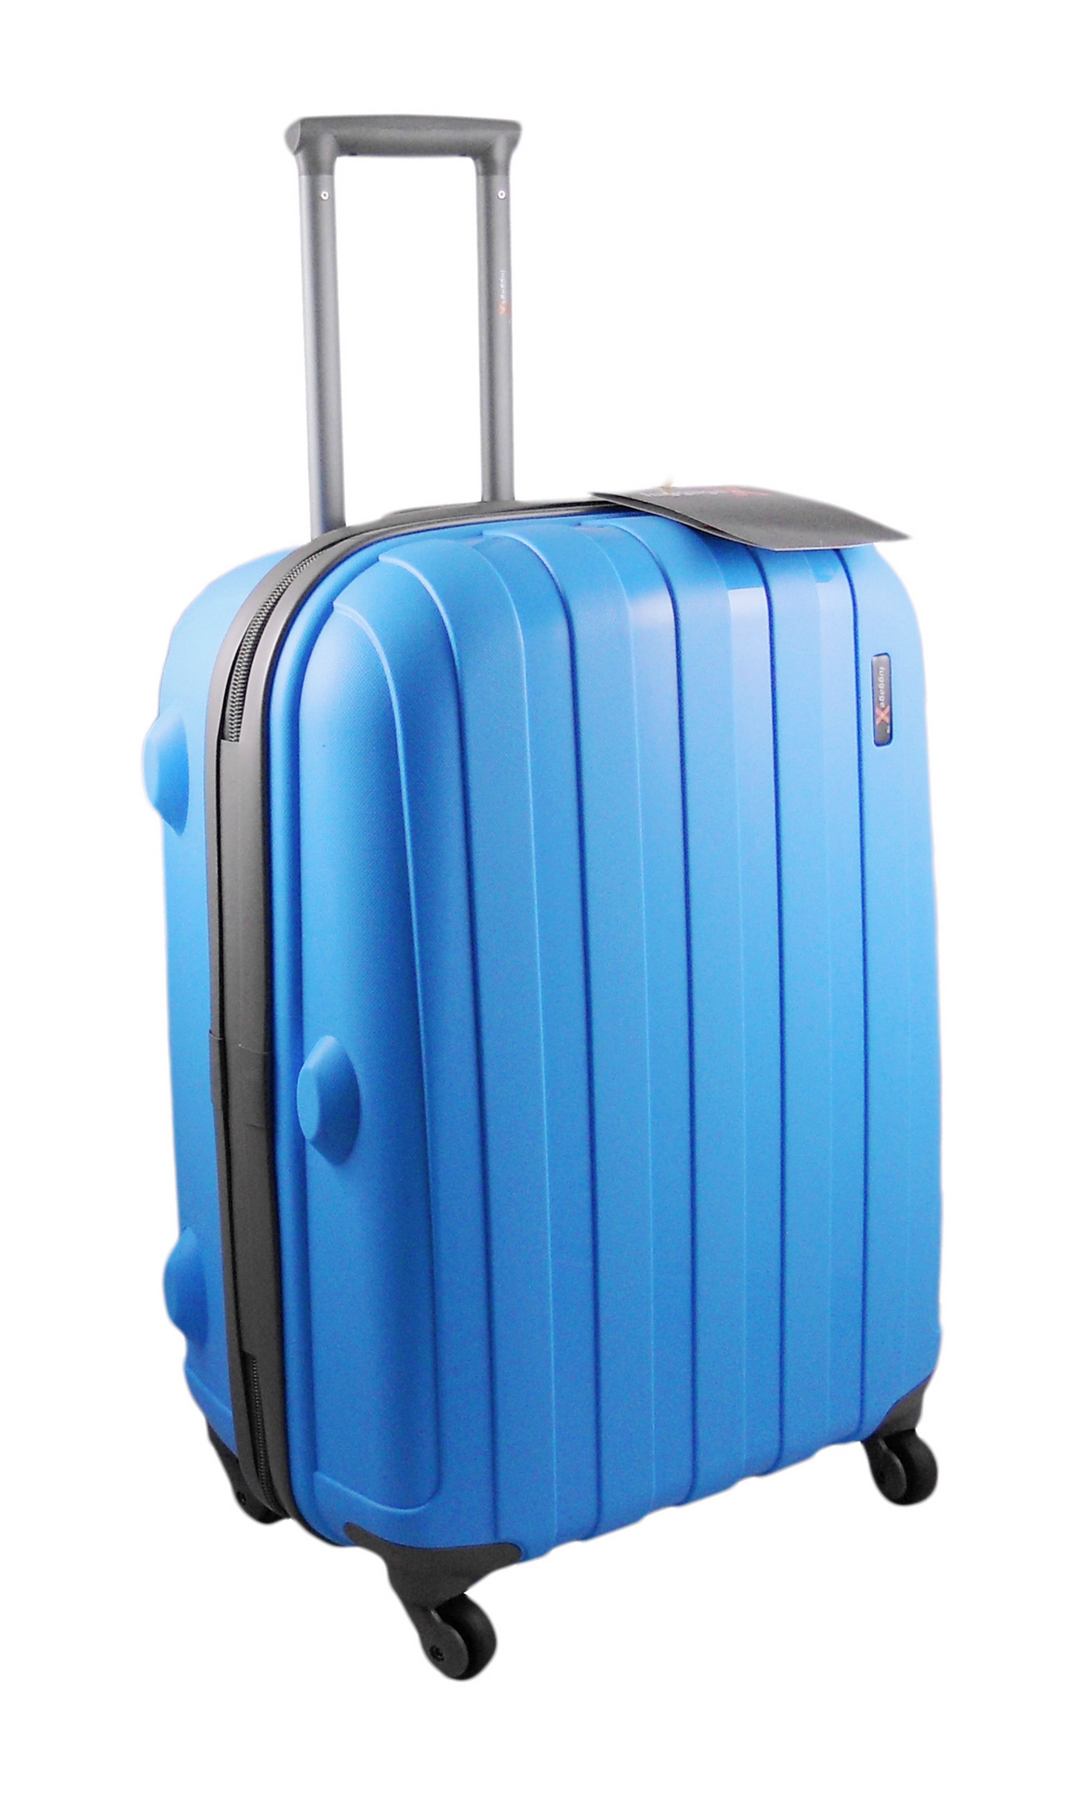 Misverstand Is aan het huilen opzettelijk LuggageX Suitcases - Hard, Tough and Virtually Indestructible